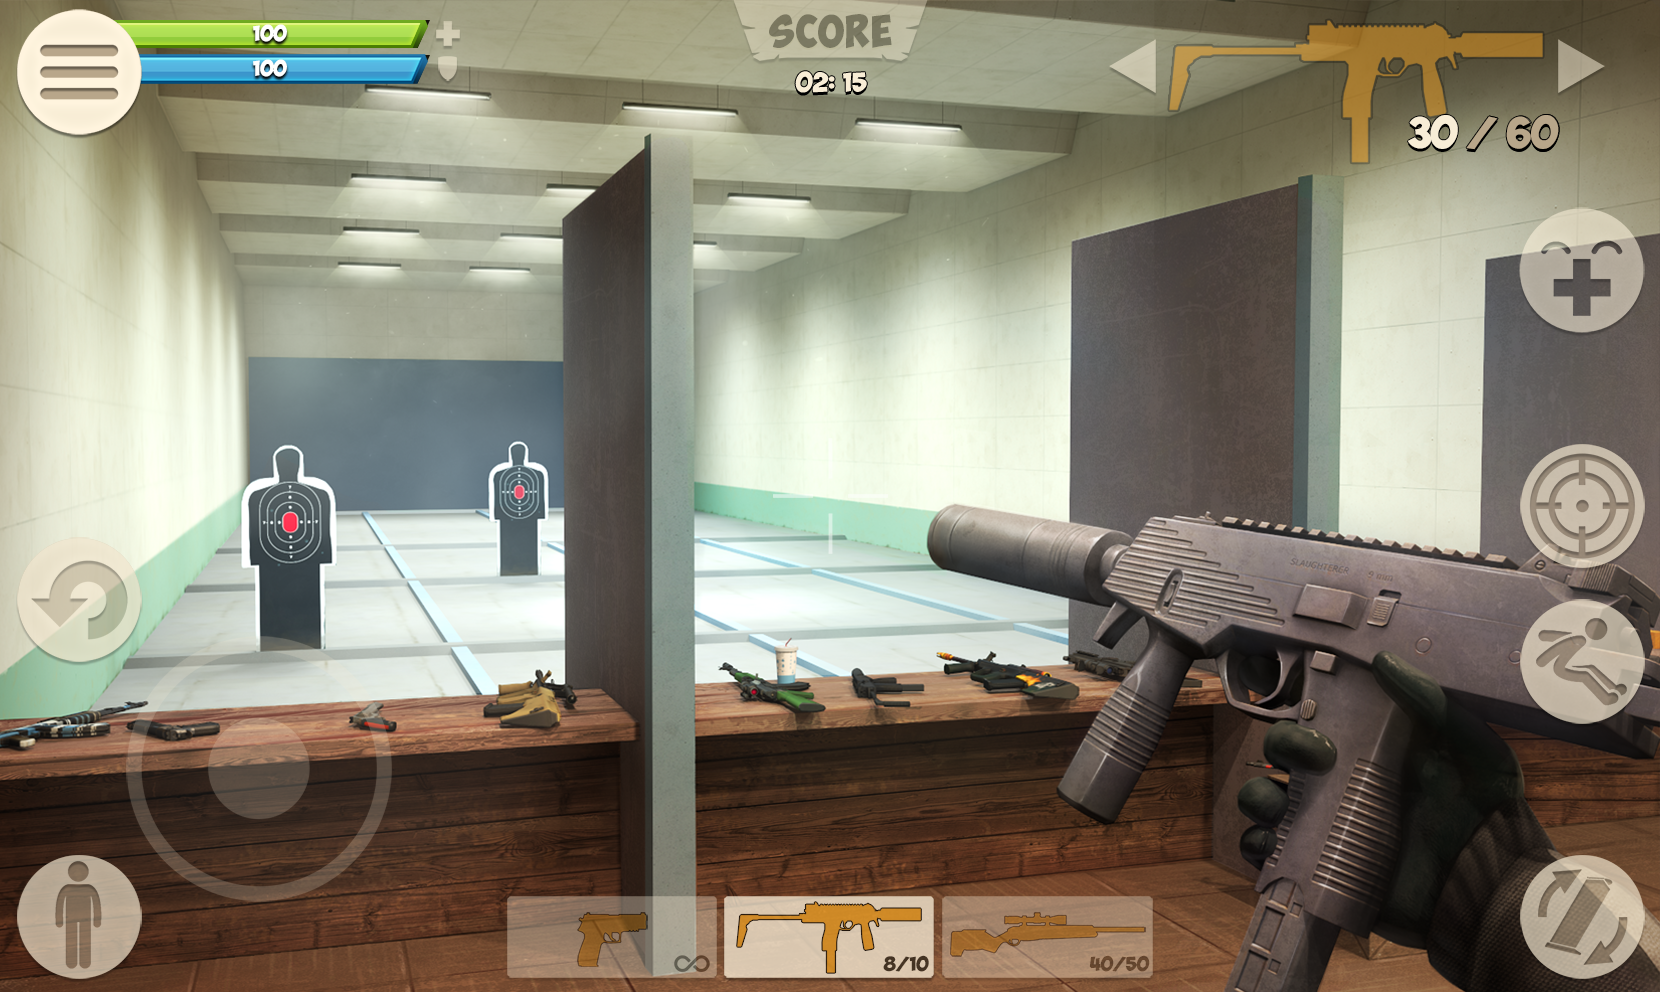 Screenshot 1 of Contra City - Game Bắn Súng Trực Tuyến (3D FPS) 0.9.9